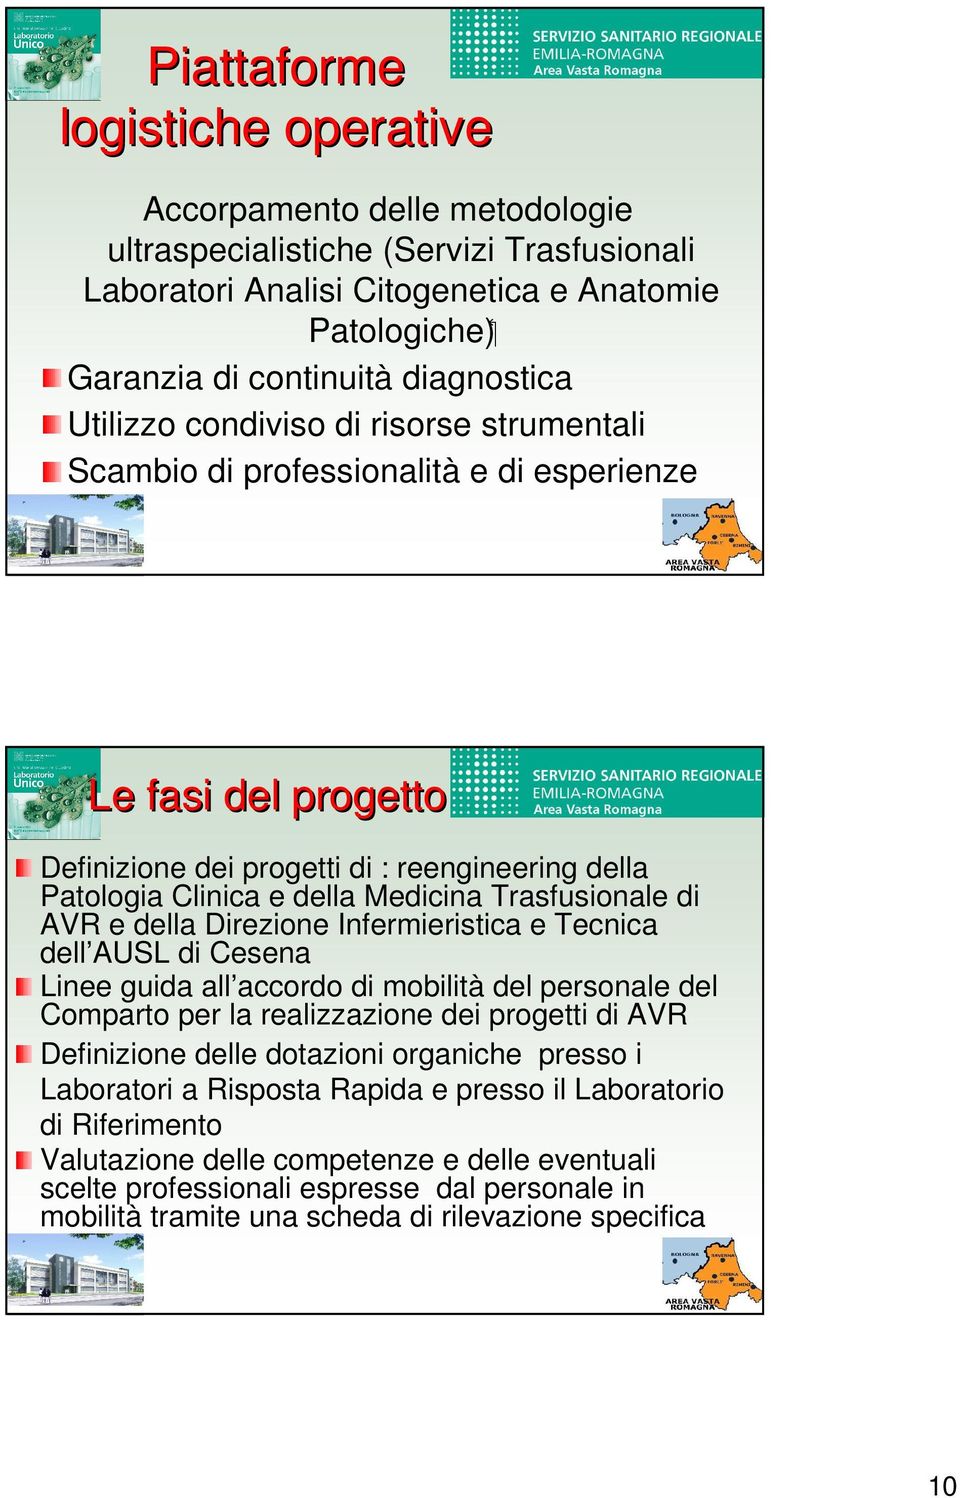 Trasfusionale di AVR e della Direzione Infermieristica e Tecnica dell AUSL di Cesena Linee guida all accordo di mobilità del personale del Comparto per la realizzazione dei progetti di AVR